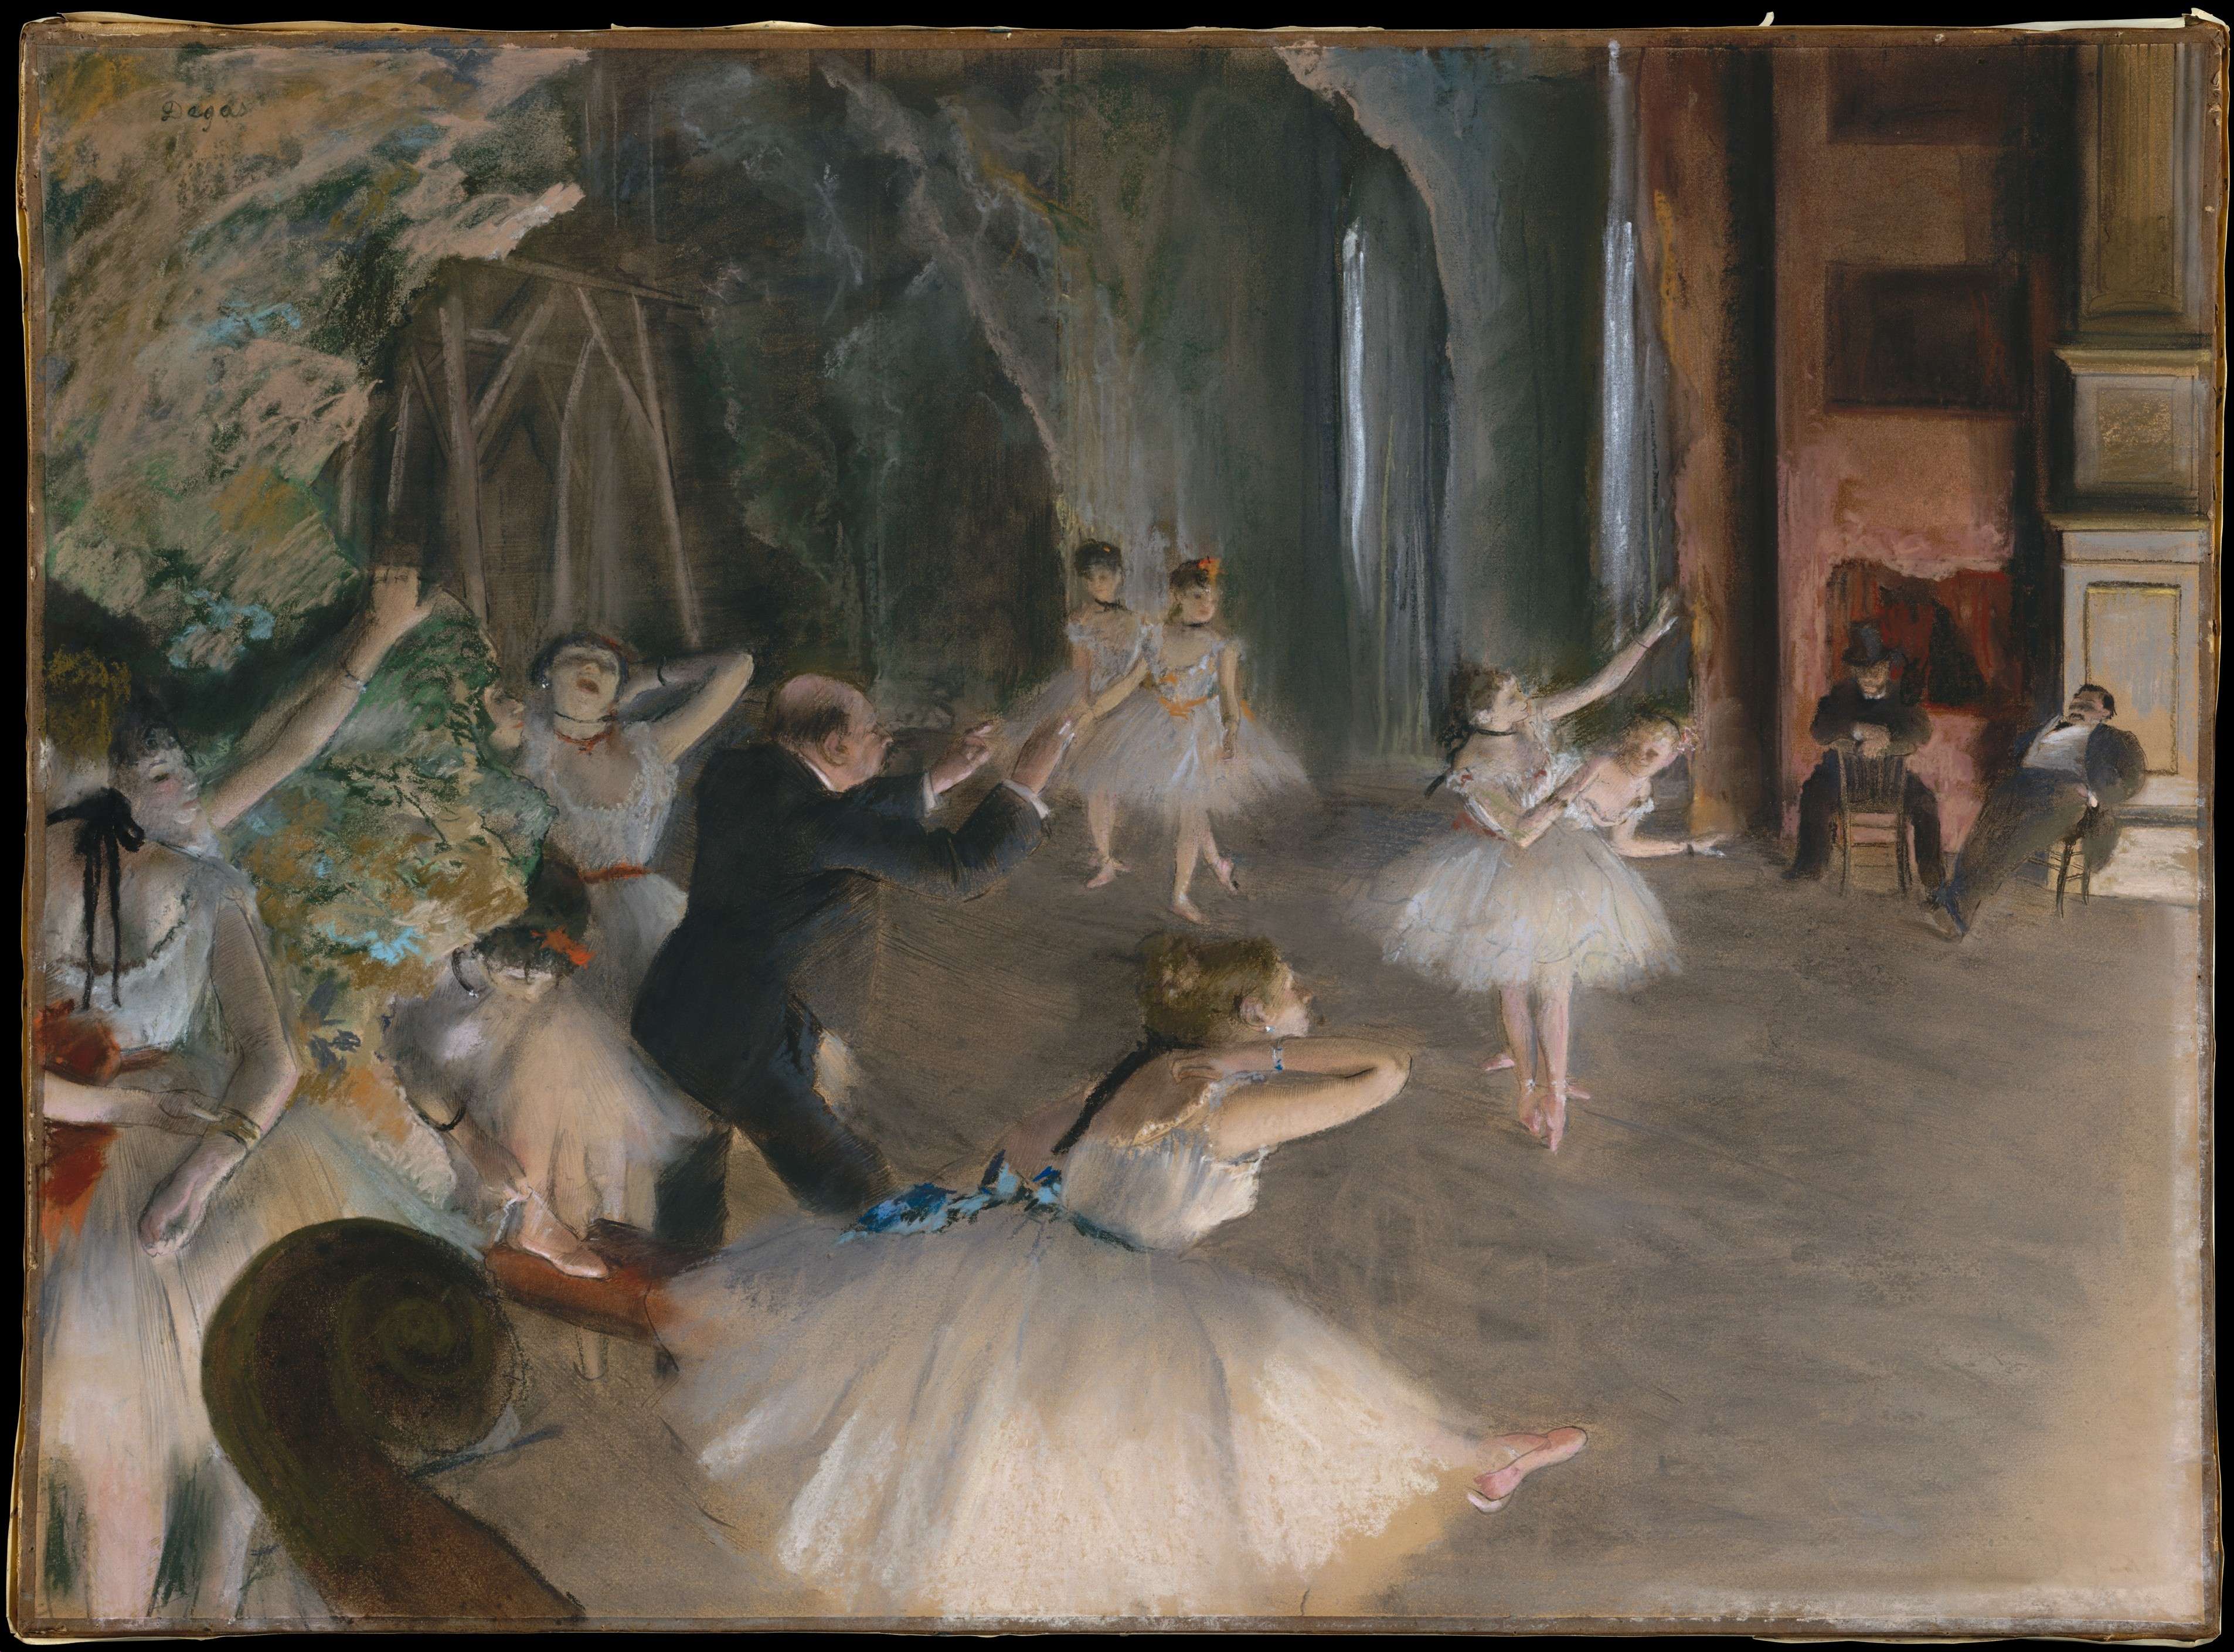 larry1914 的想法: 埃德加61德加:《芭蕾舞排练》1874 在博